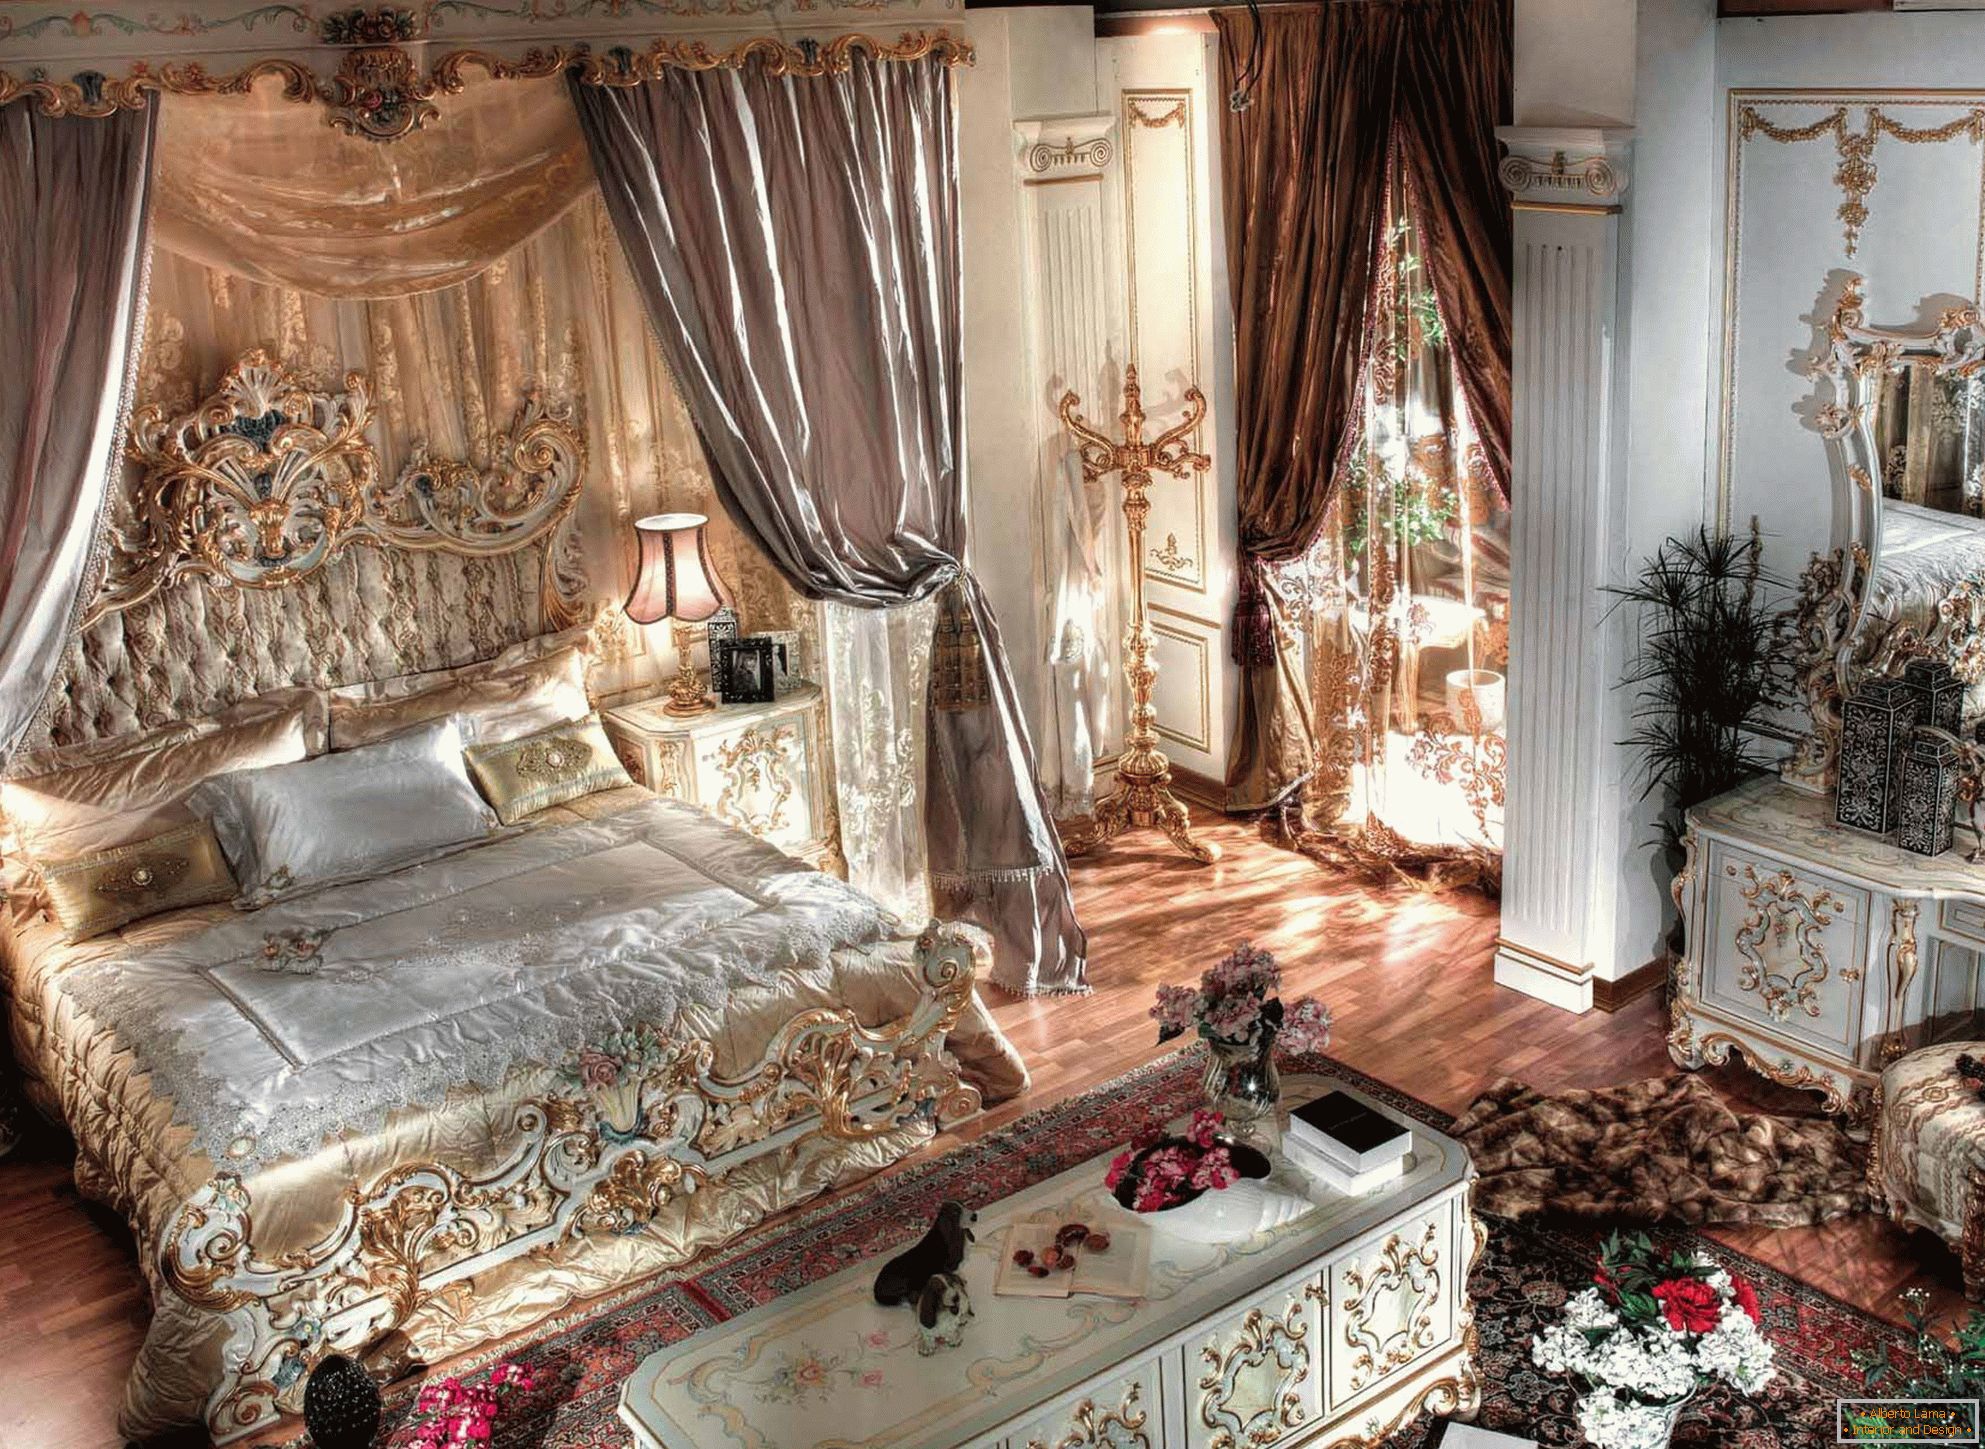 Lussuosa camera da letto barocca con soffitti alti. Al centro della composizione c'è un enorme letto in legno con schienali scolpiti.